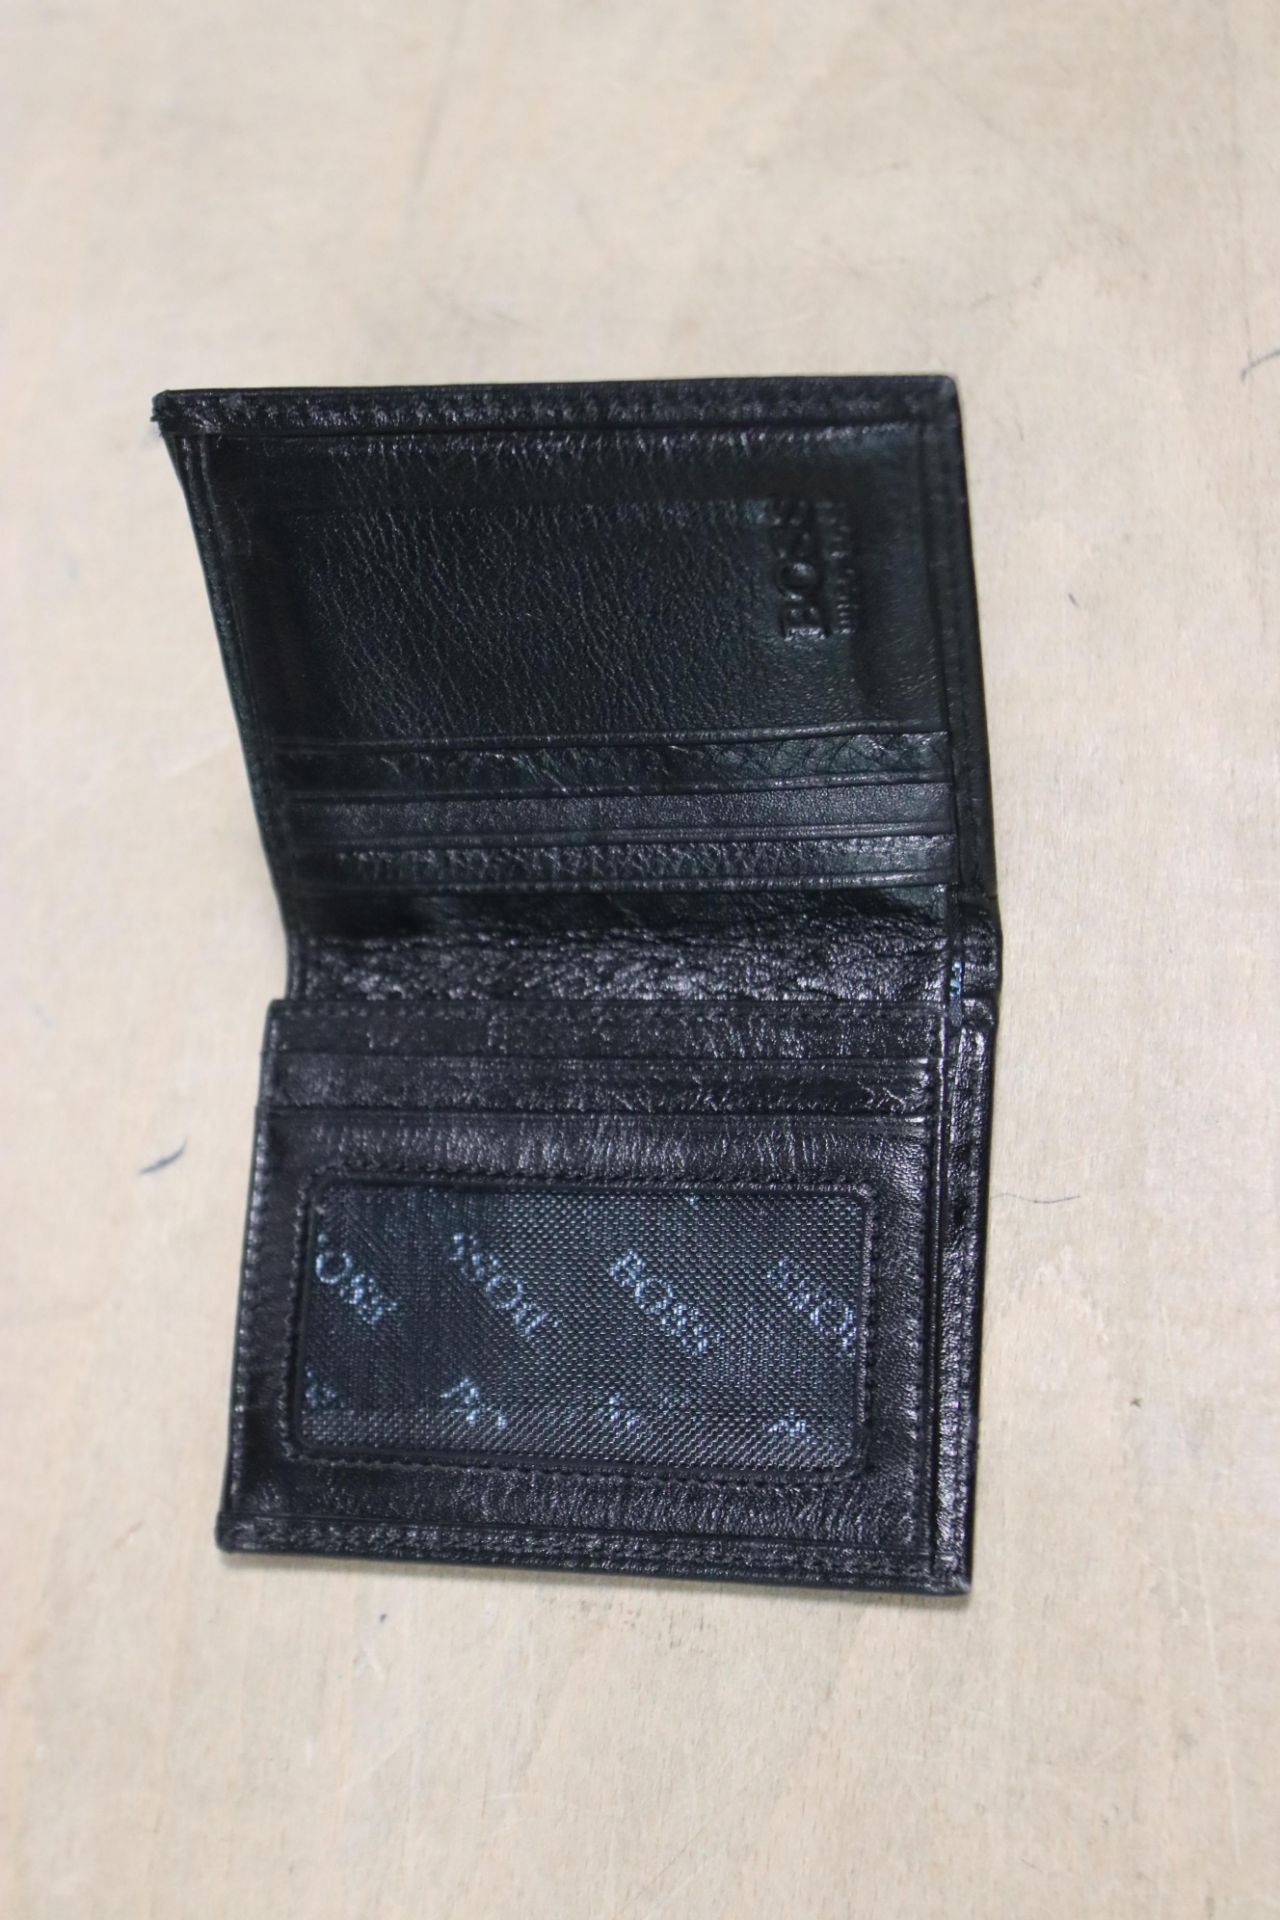 Hugo Boss gents wallet - Image 2 of 2